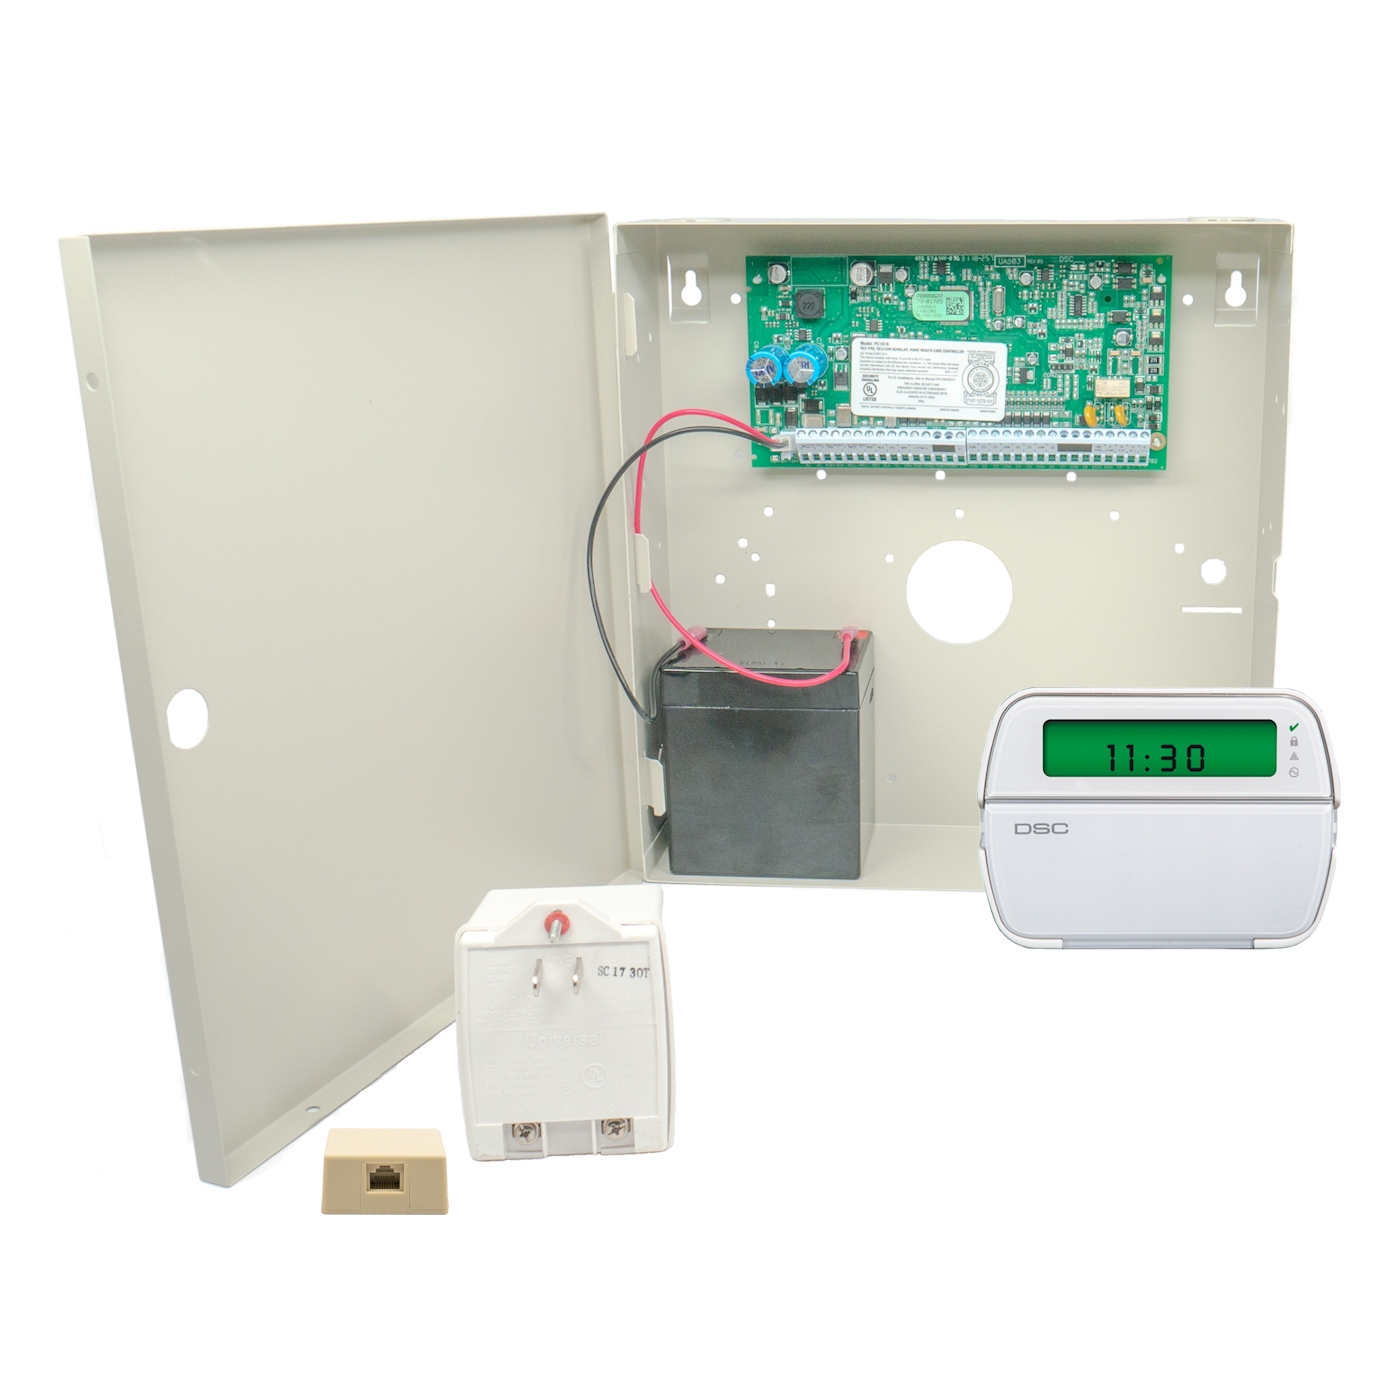 DSC KIT16-NKAU Alarm Panel Kit (Large Cabinet)